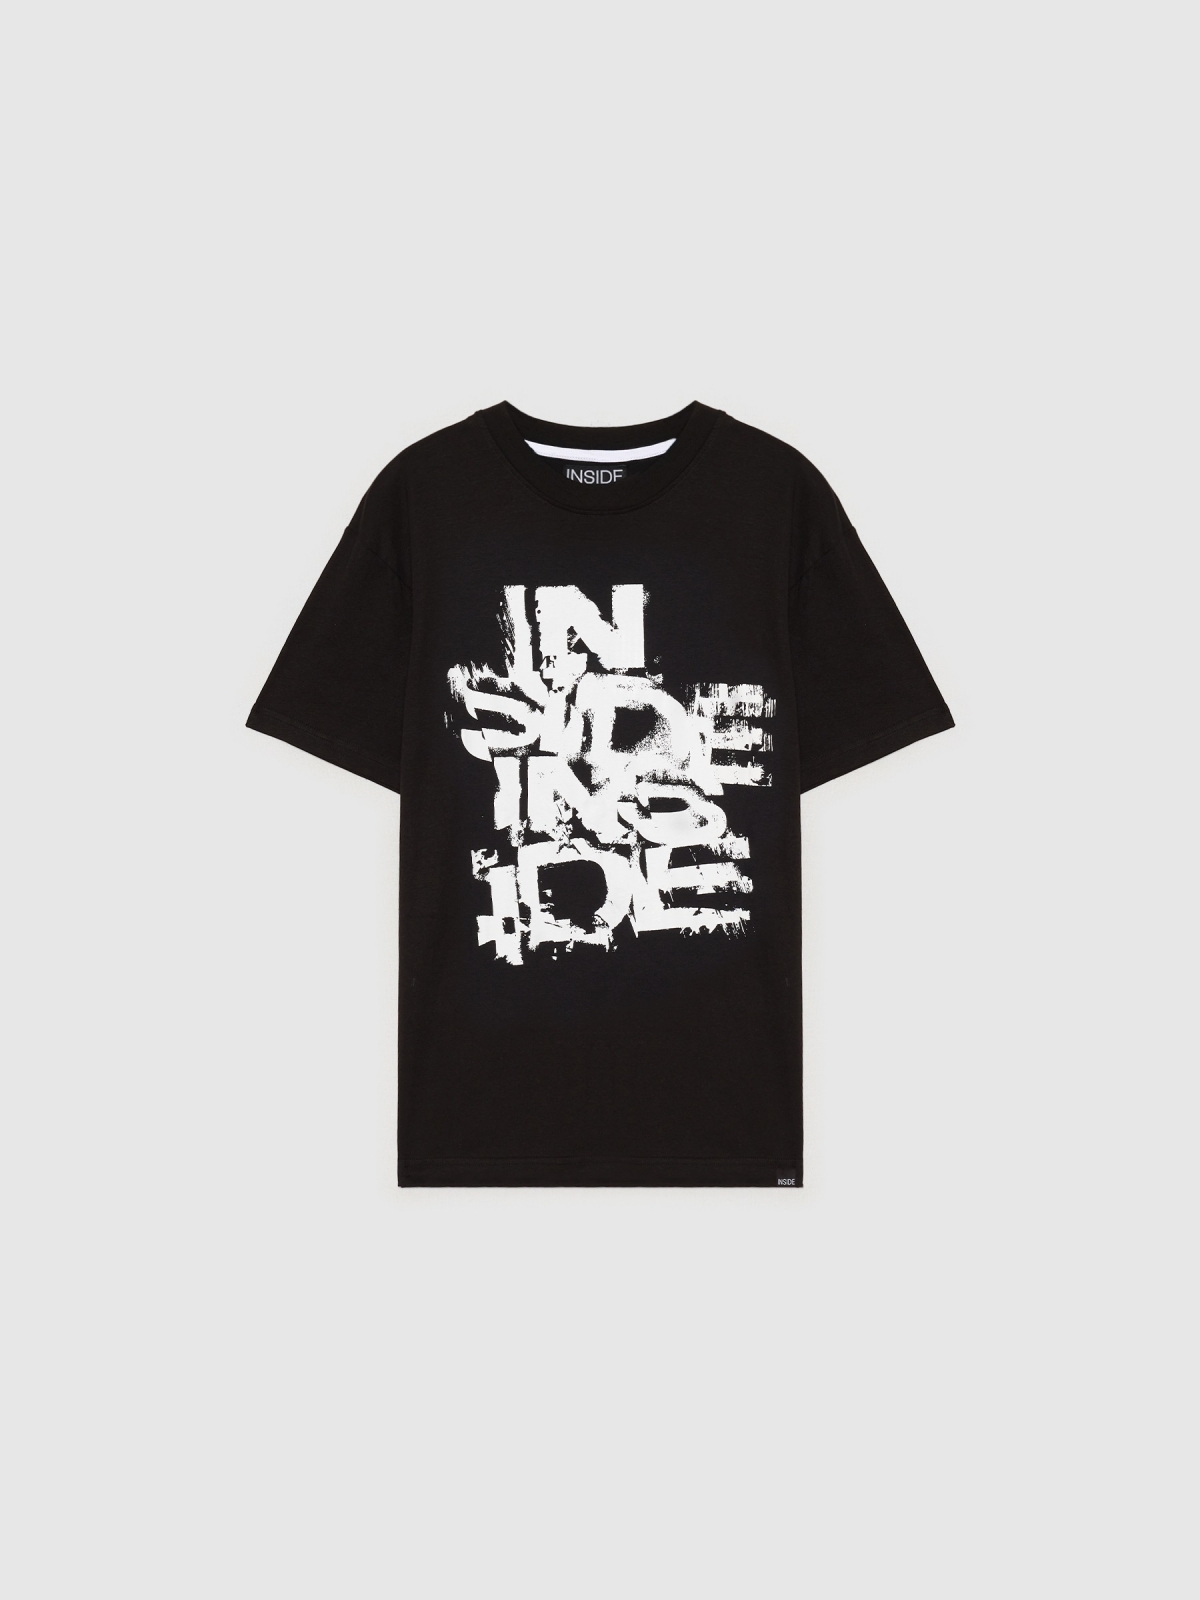  T-shirt com logótipo INSIDE preto